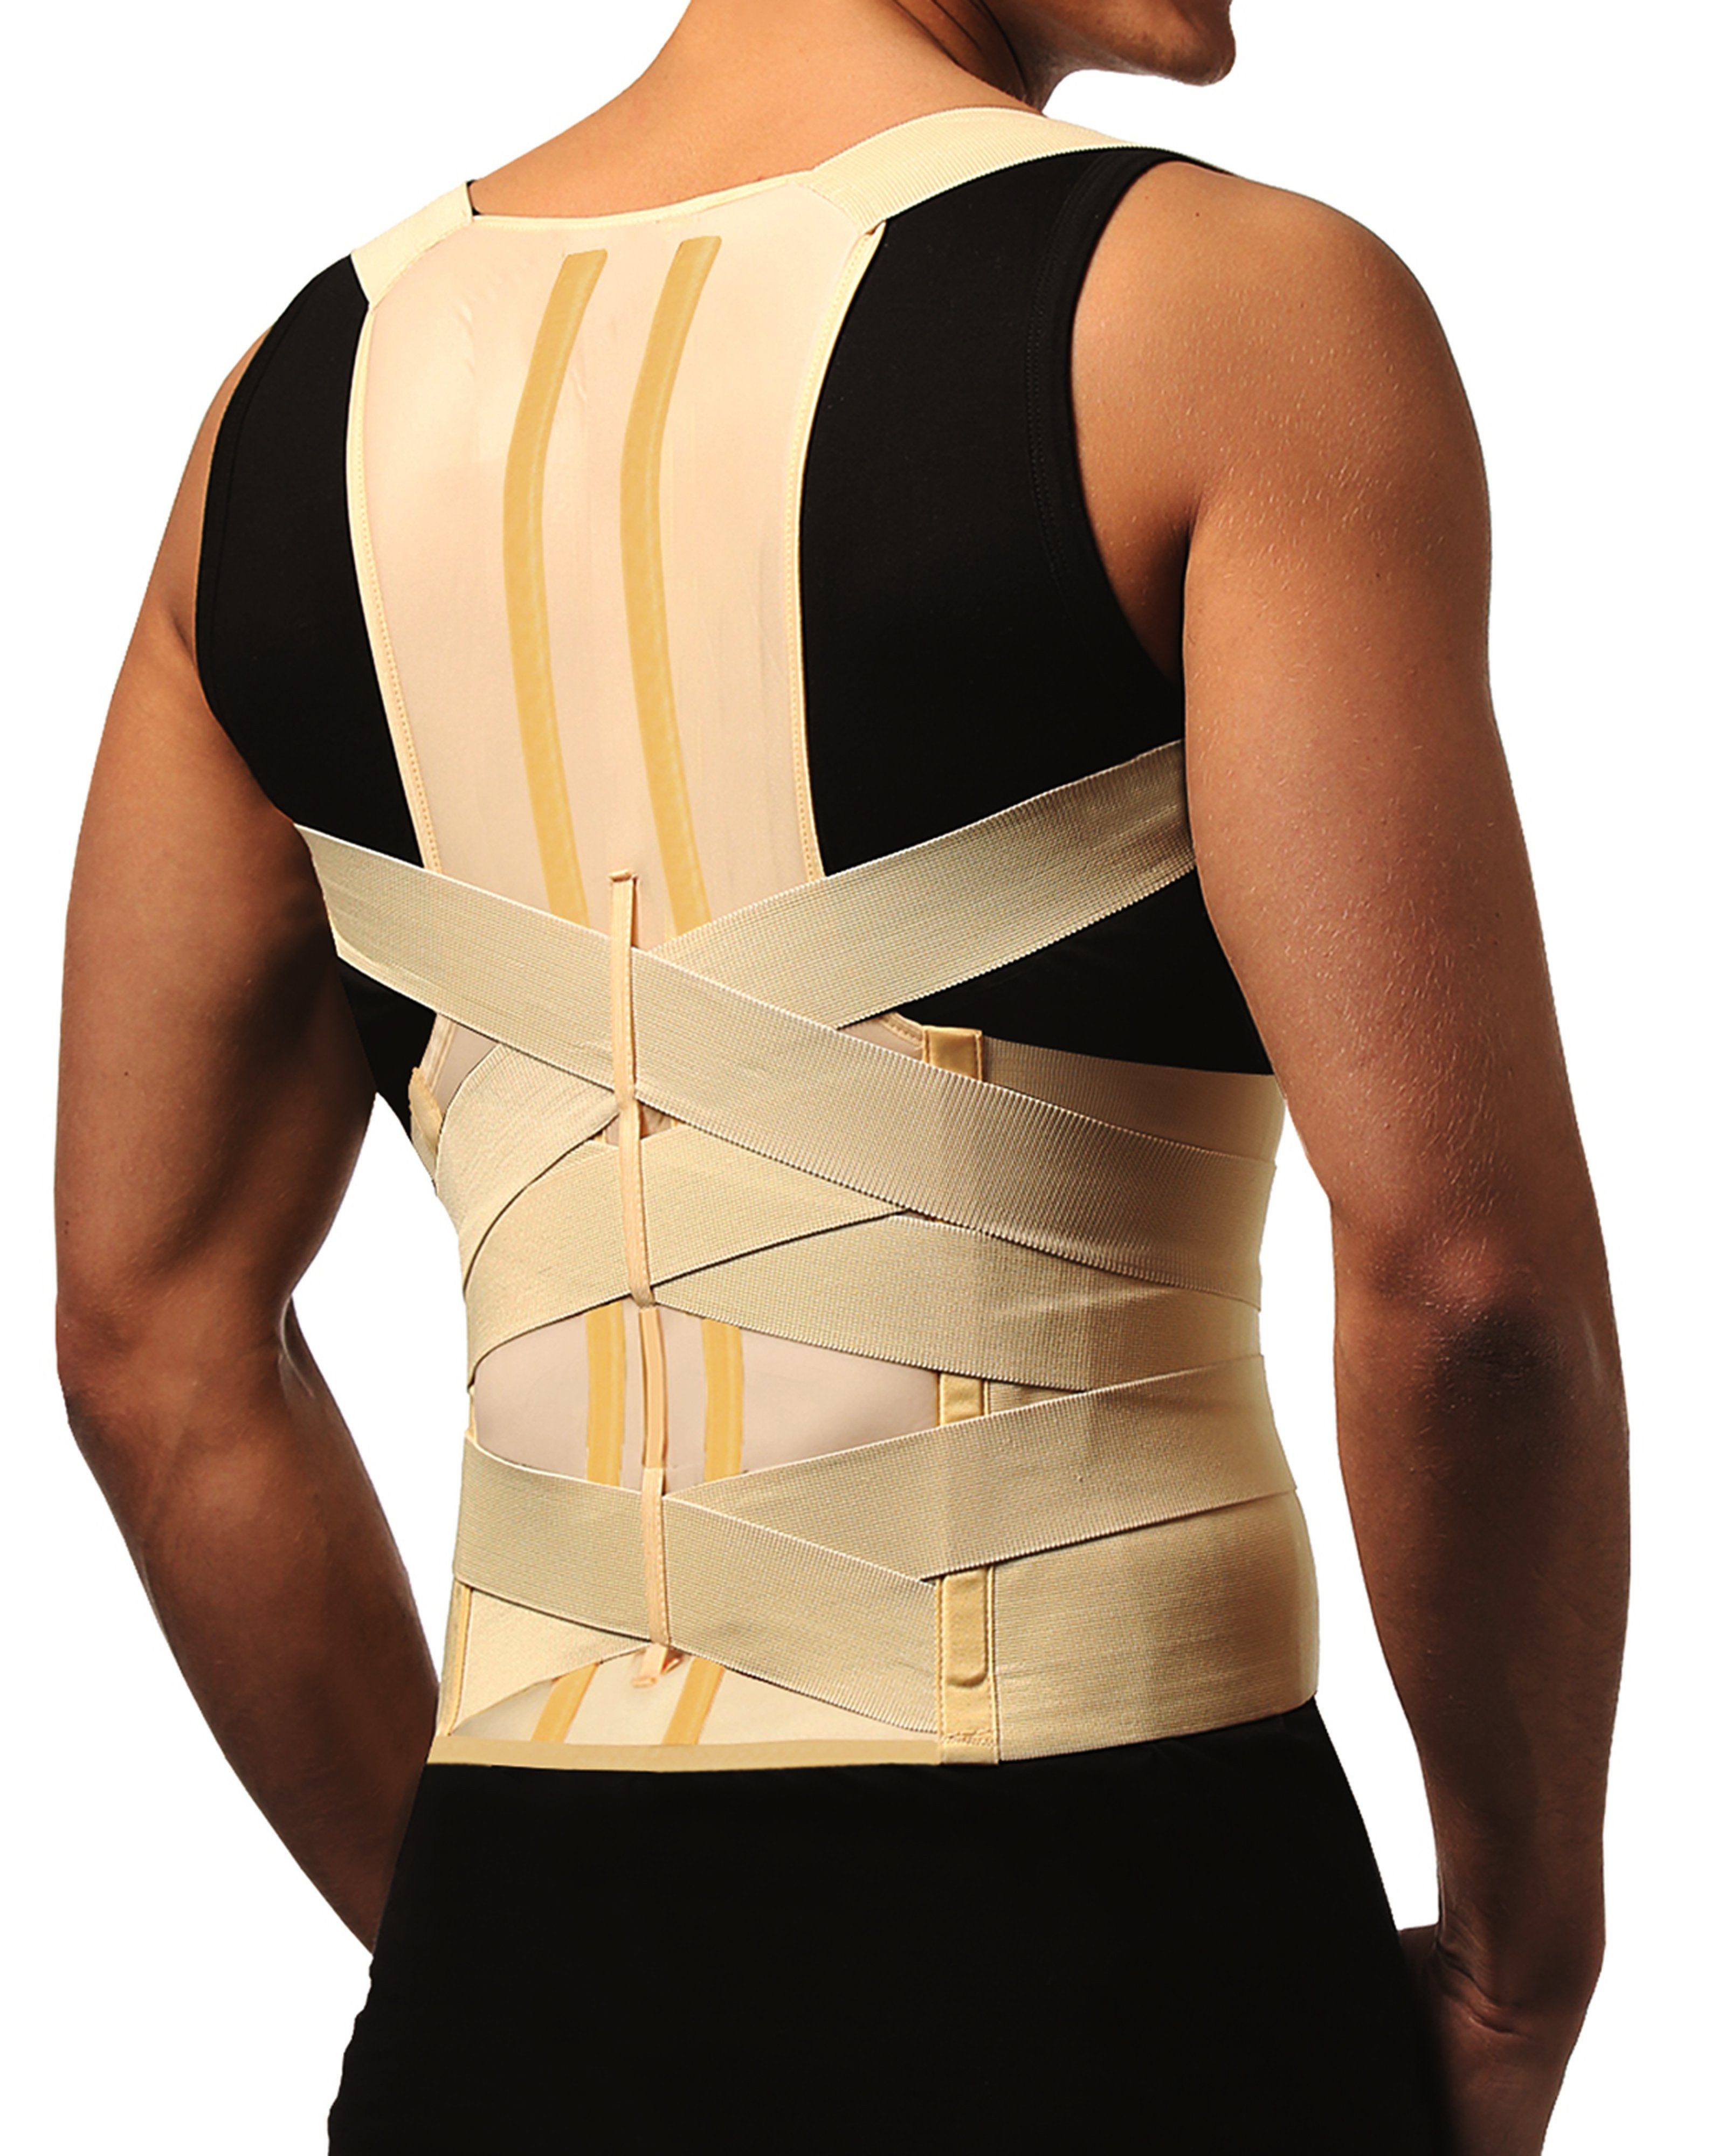 Tonus Elast Rückenbandage »Rückenstütze Geradehalter Stütze Orthese  Rücken-Halter Korrektor 0109-01« online kaufen | OTTO